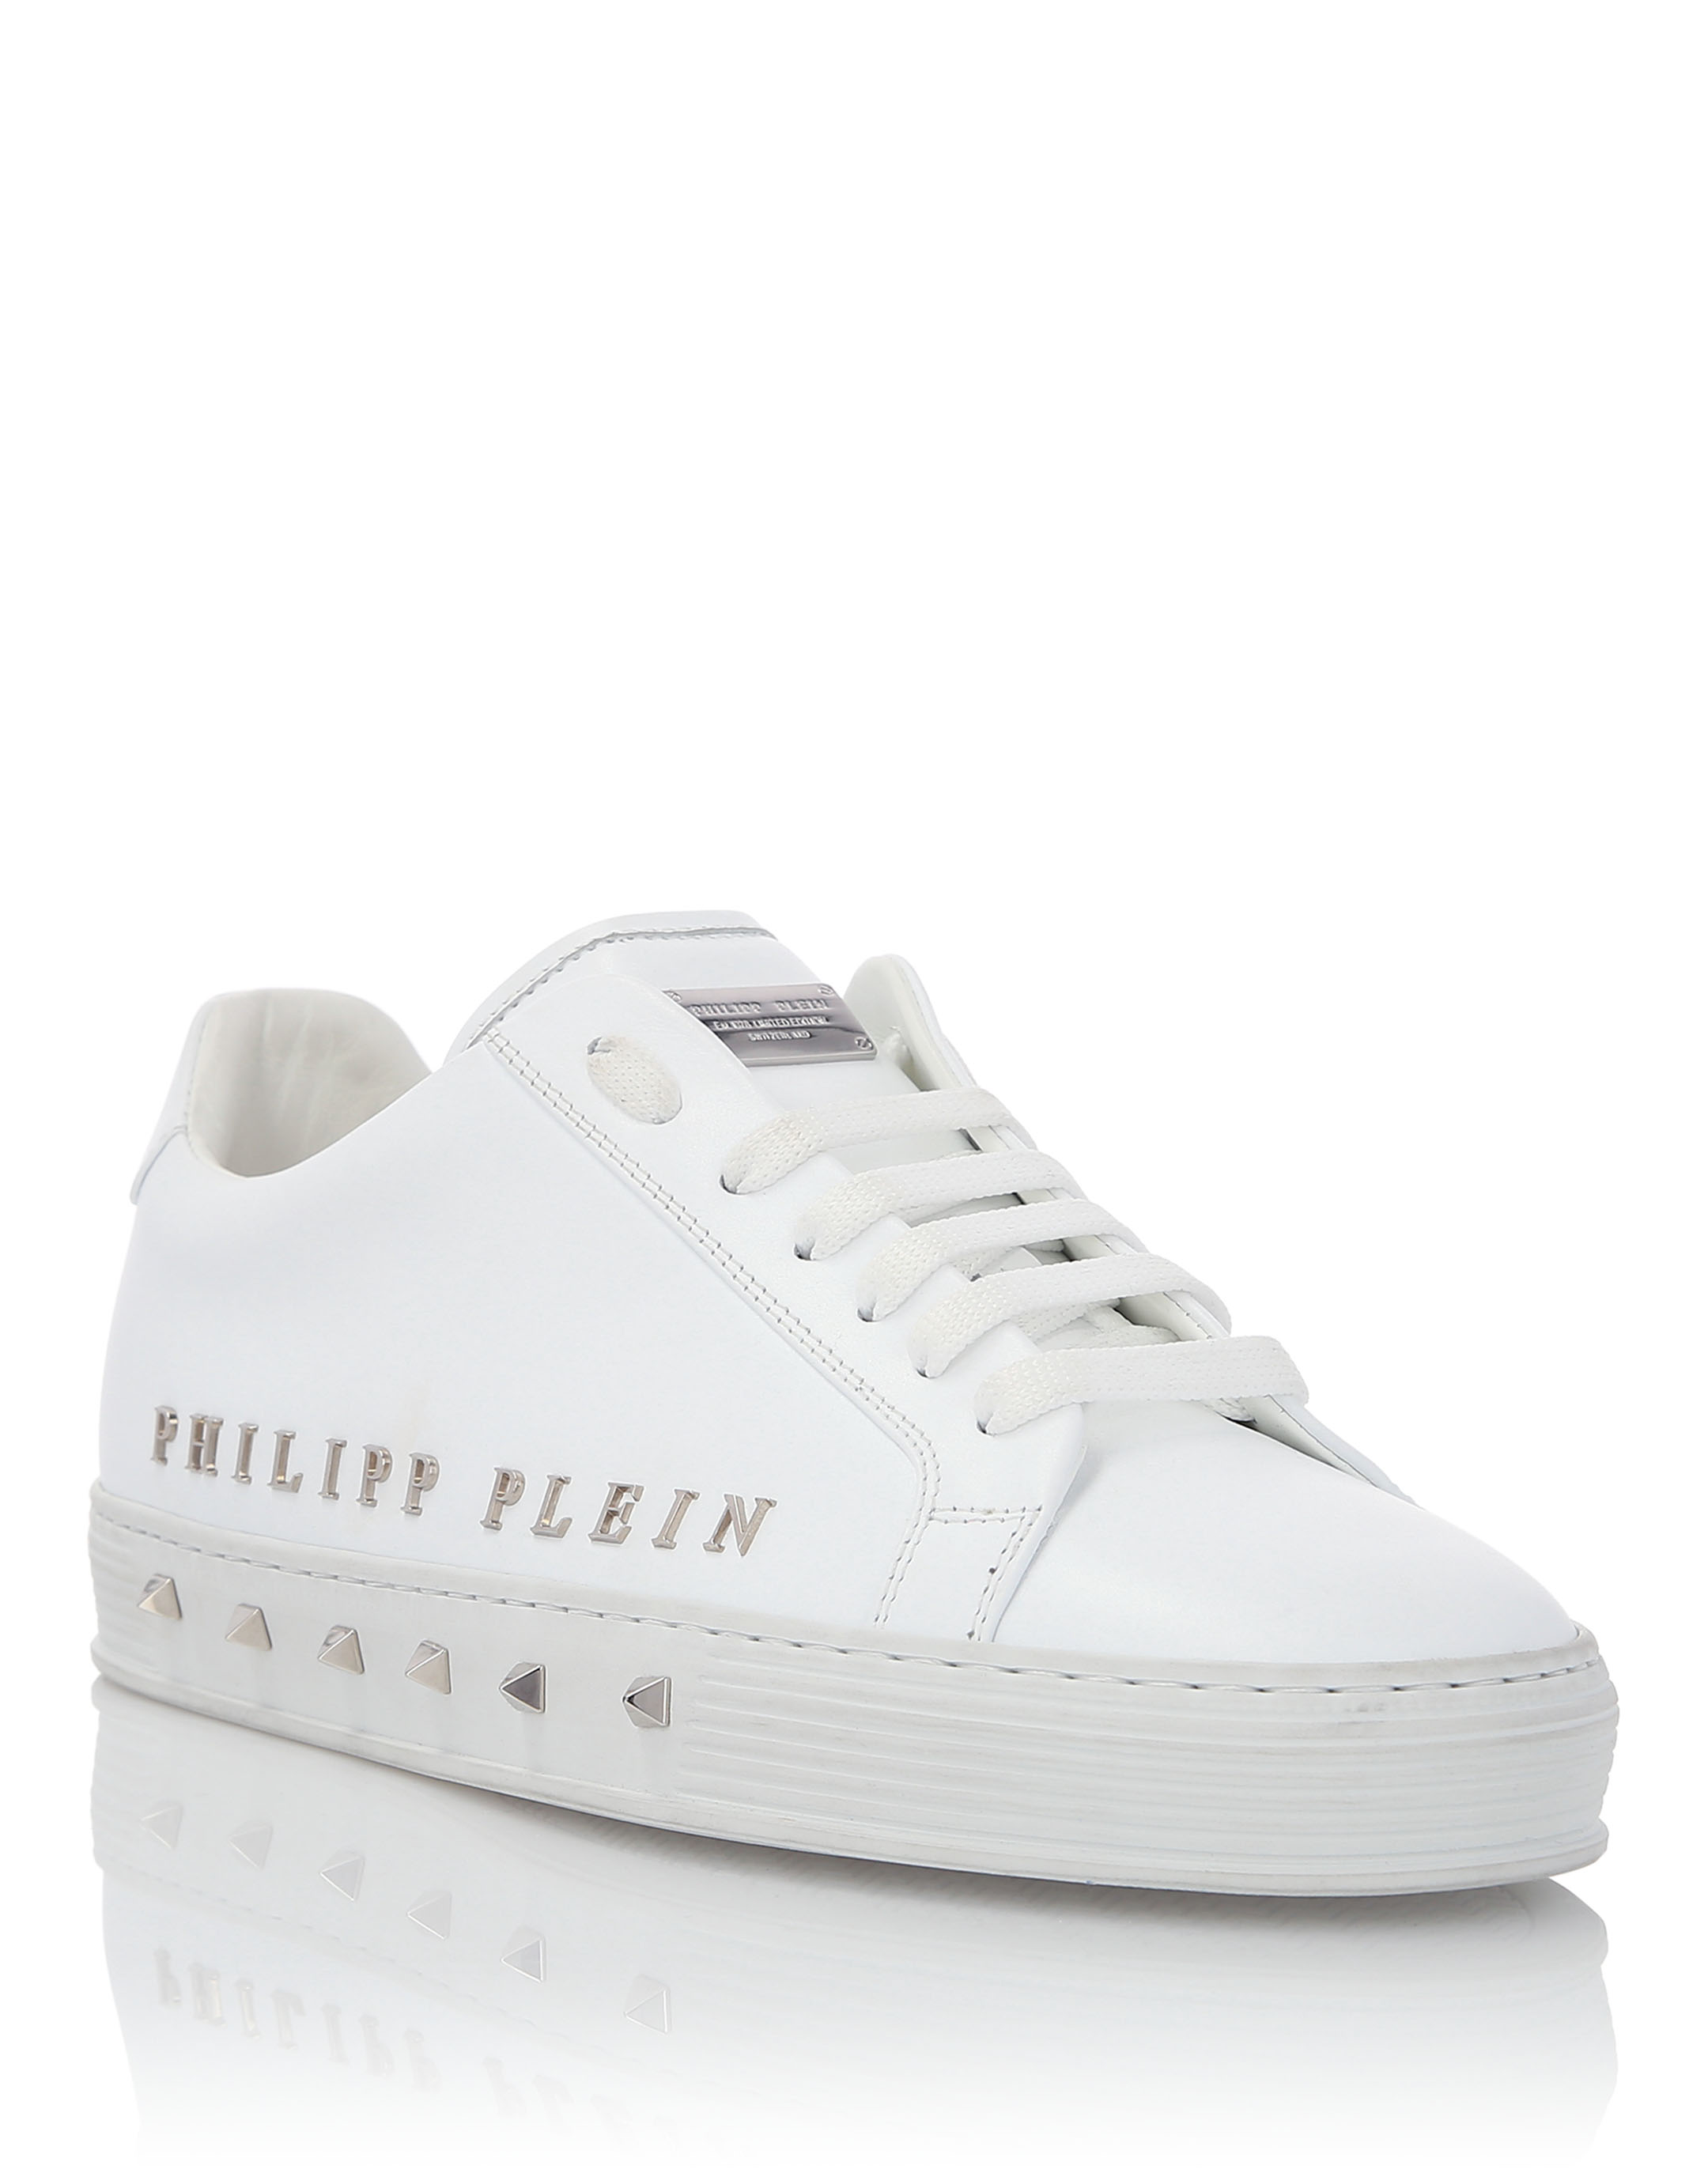 philipp plein white shoes